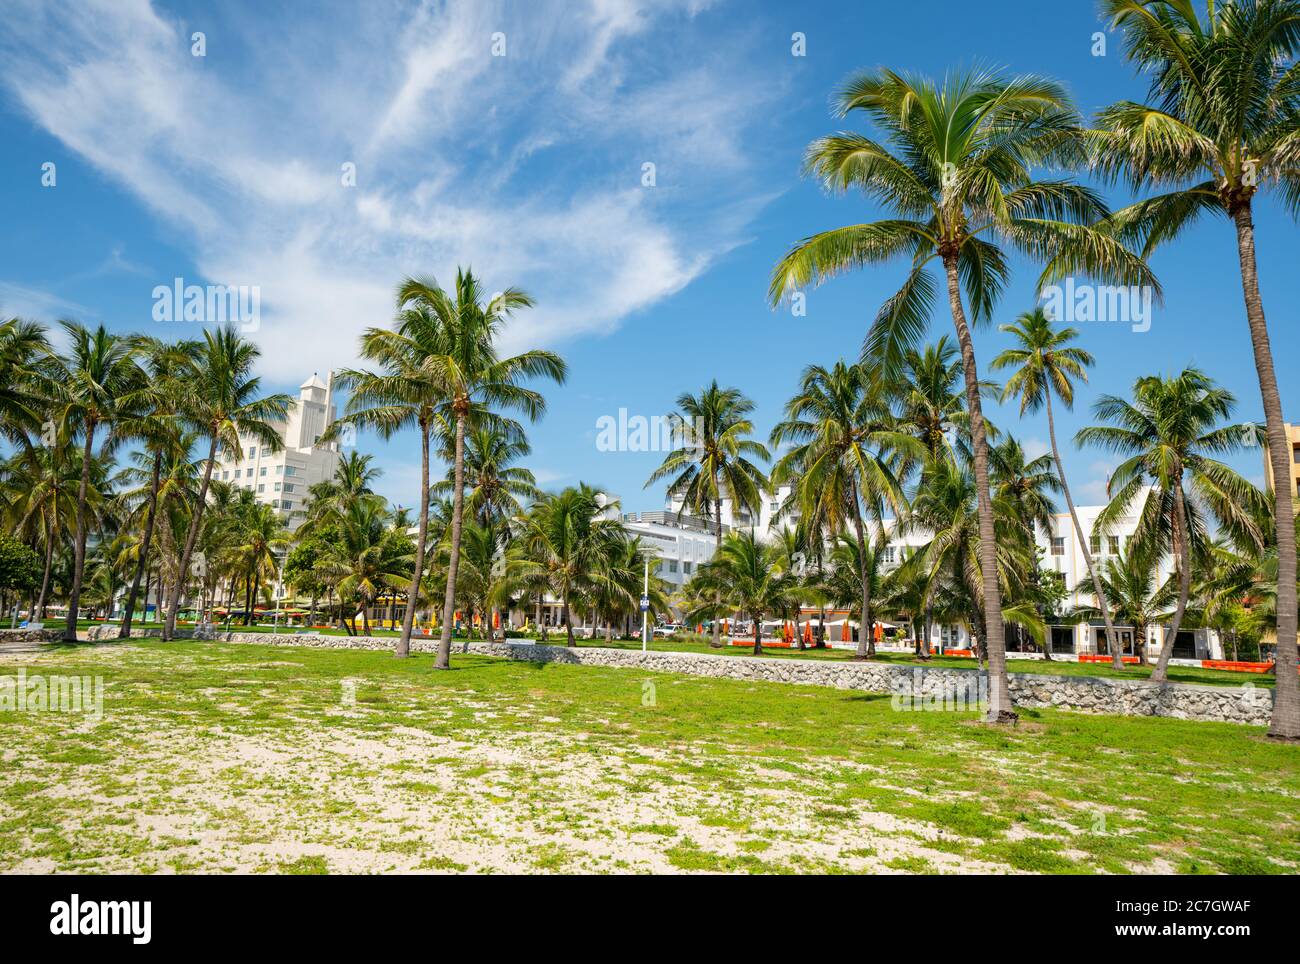 Colorful palm trees Miami Beach Lummus Park Stock Photo